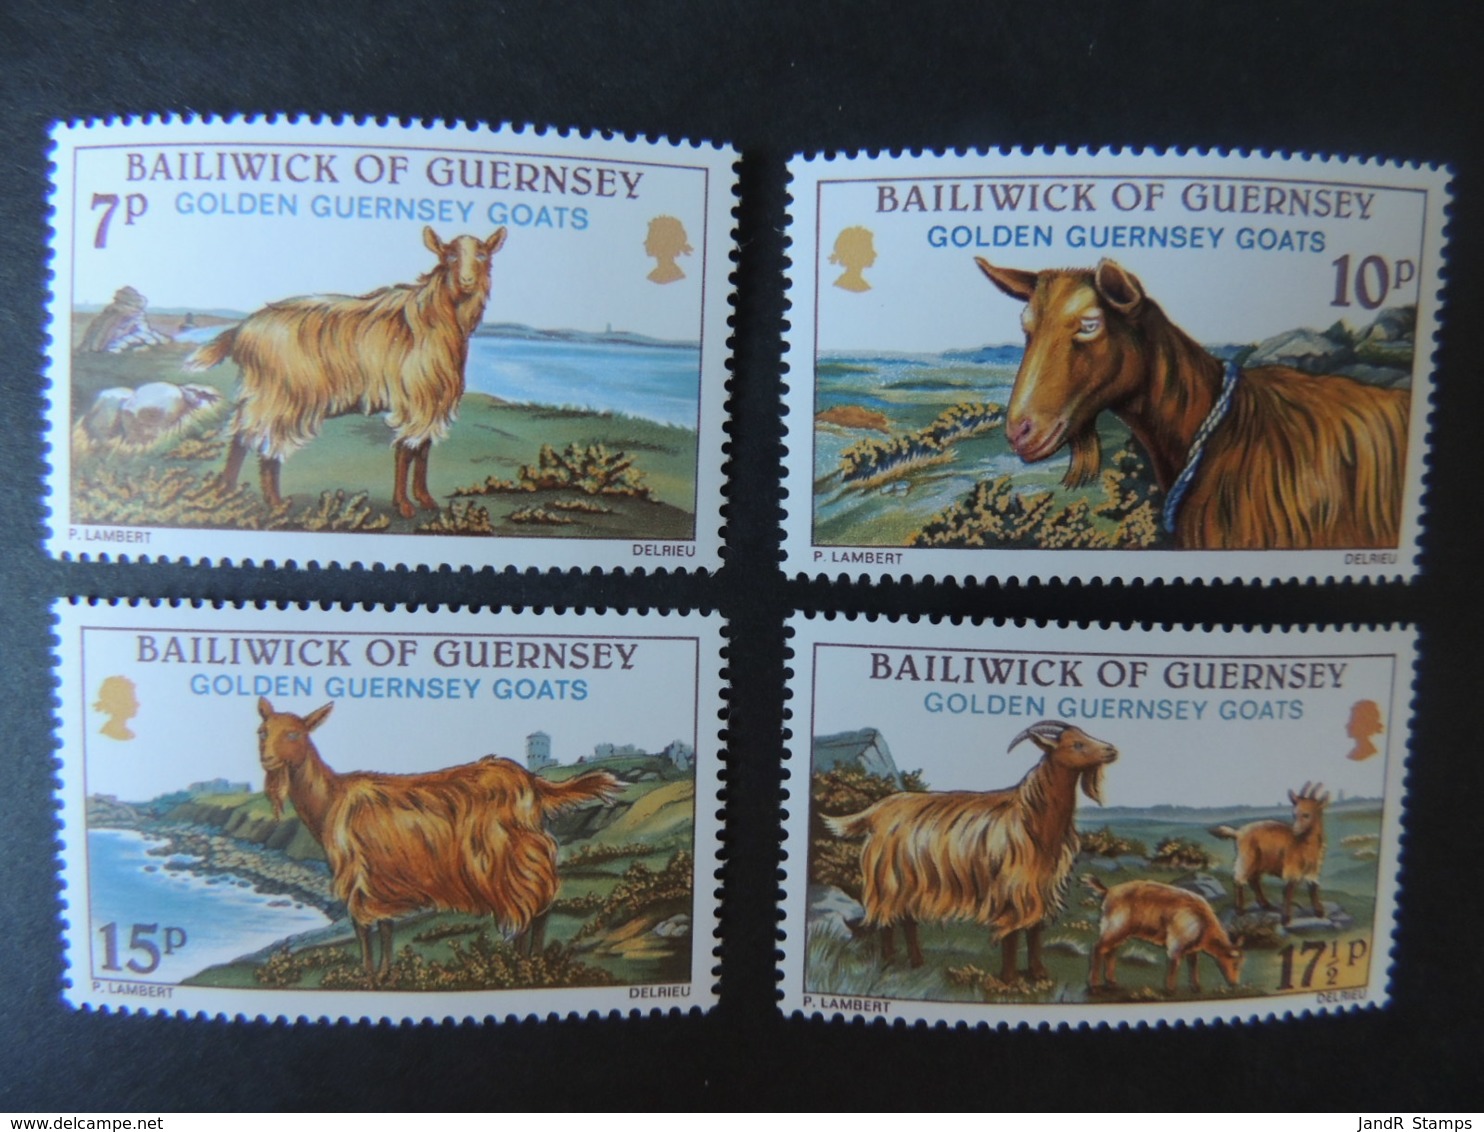 GUERNSEY 1980 GOLDEN GOATS SG217-220 MNH SET 4 VALUES ANIMALS - Guernsey